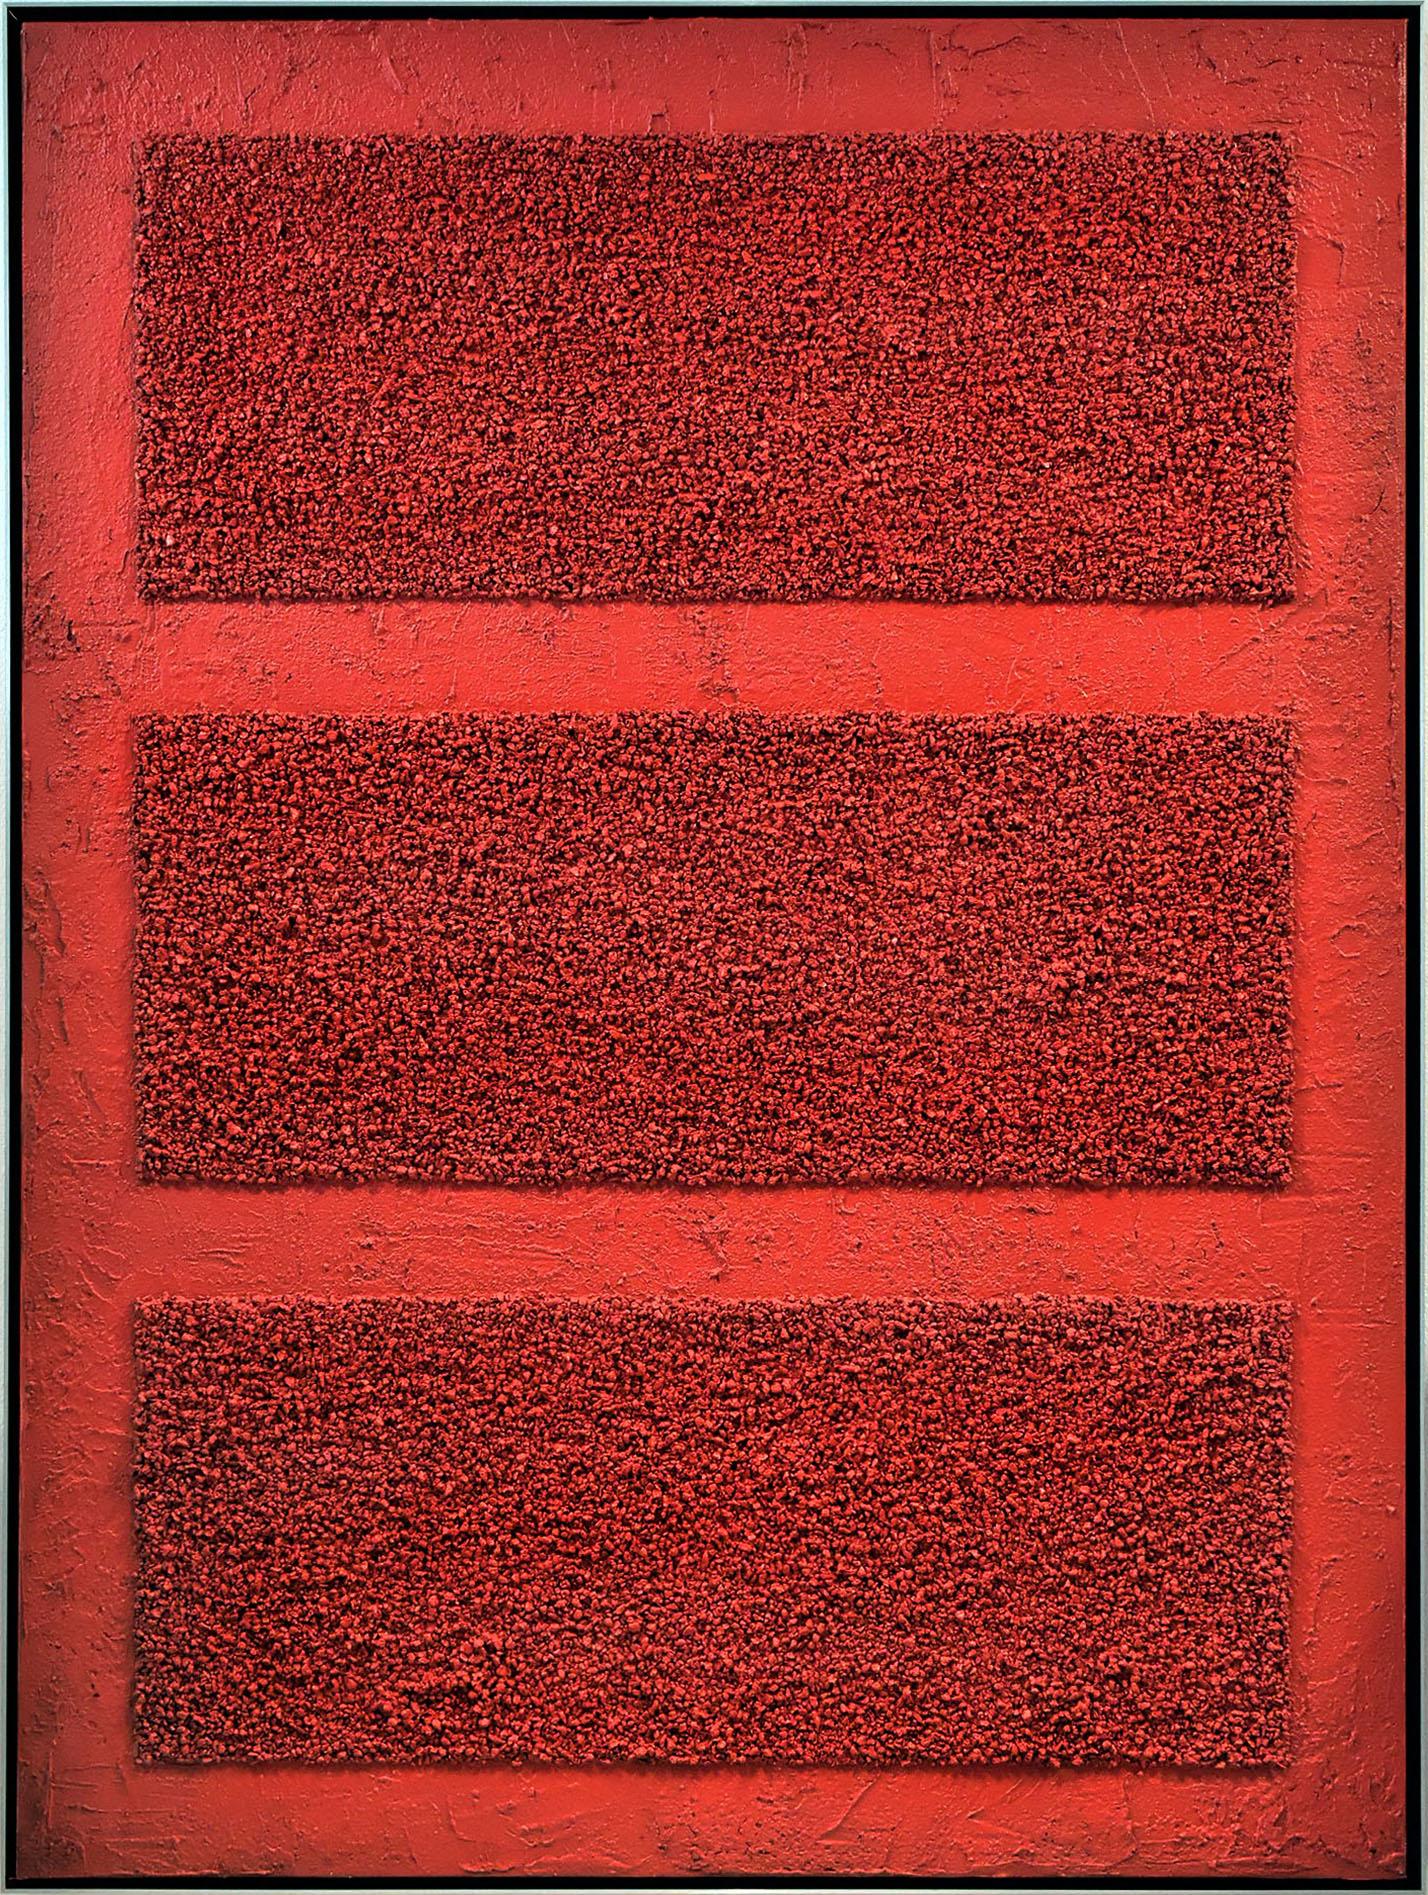 Benjamin Birillo Jr. Abstract Painting - Red Bars 2